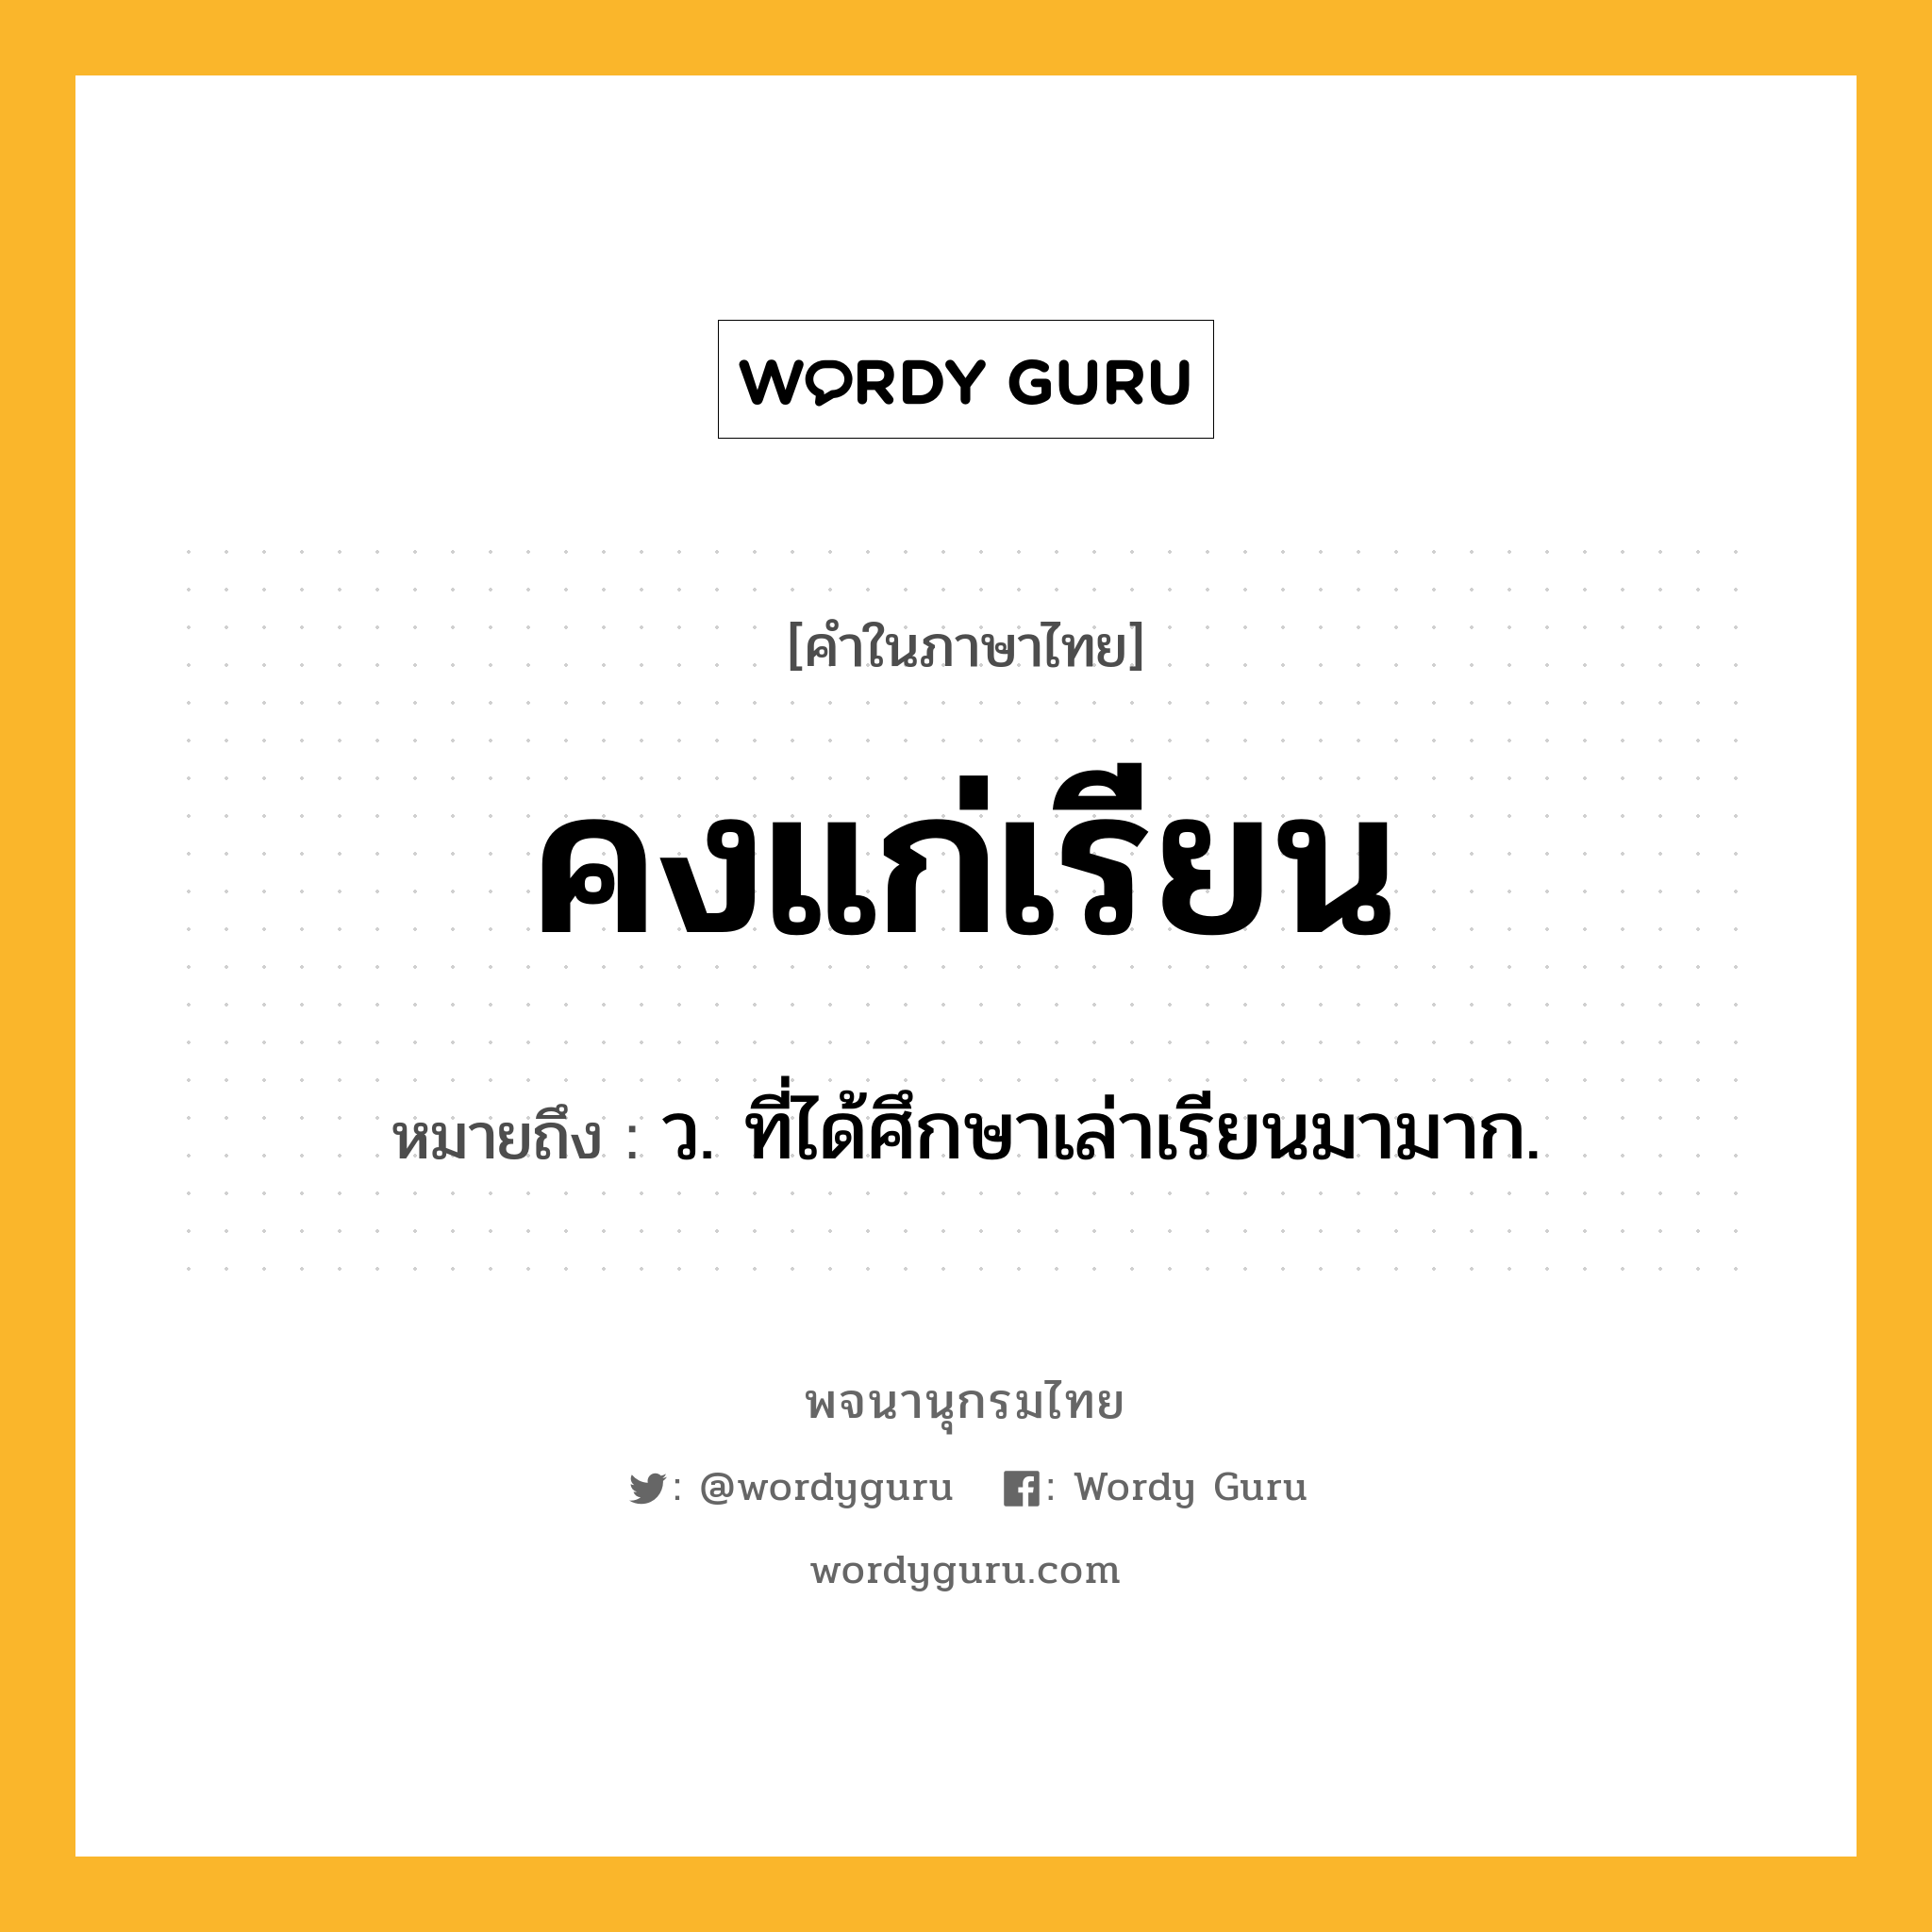 คงแก่เรียน หมายถึงอะไร?, คำในภาษาไทย คงแก่เรียน หมายถึง ว. ที่ได้ศึกษาเล่าเรียนมามาก.